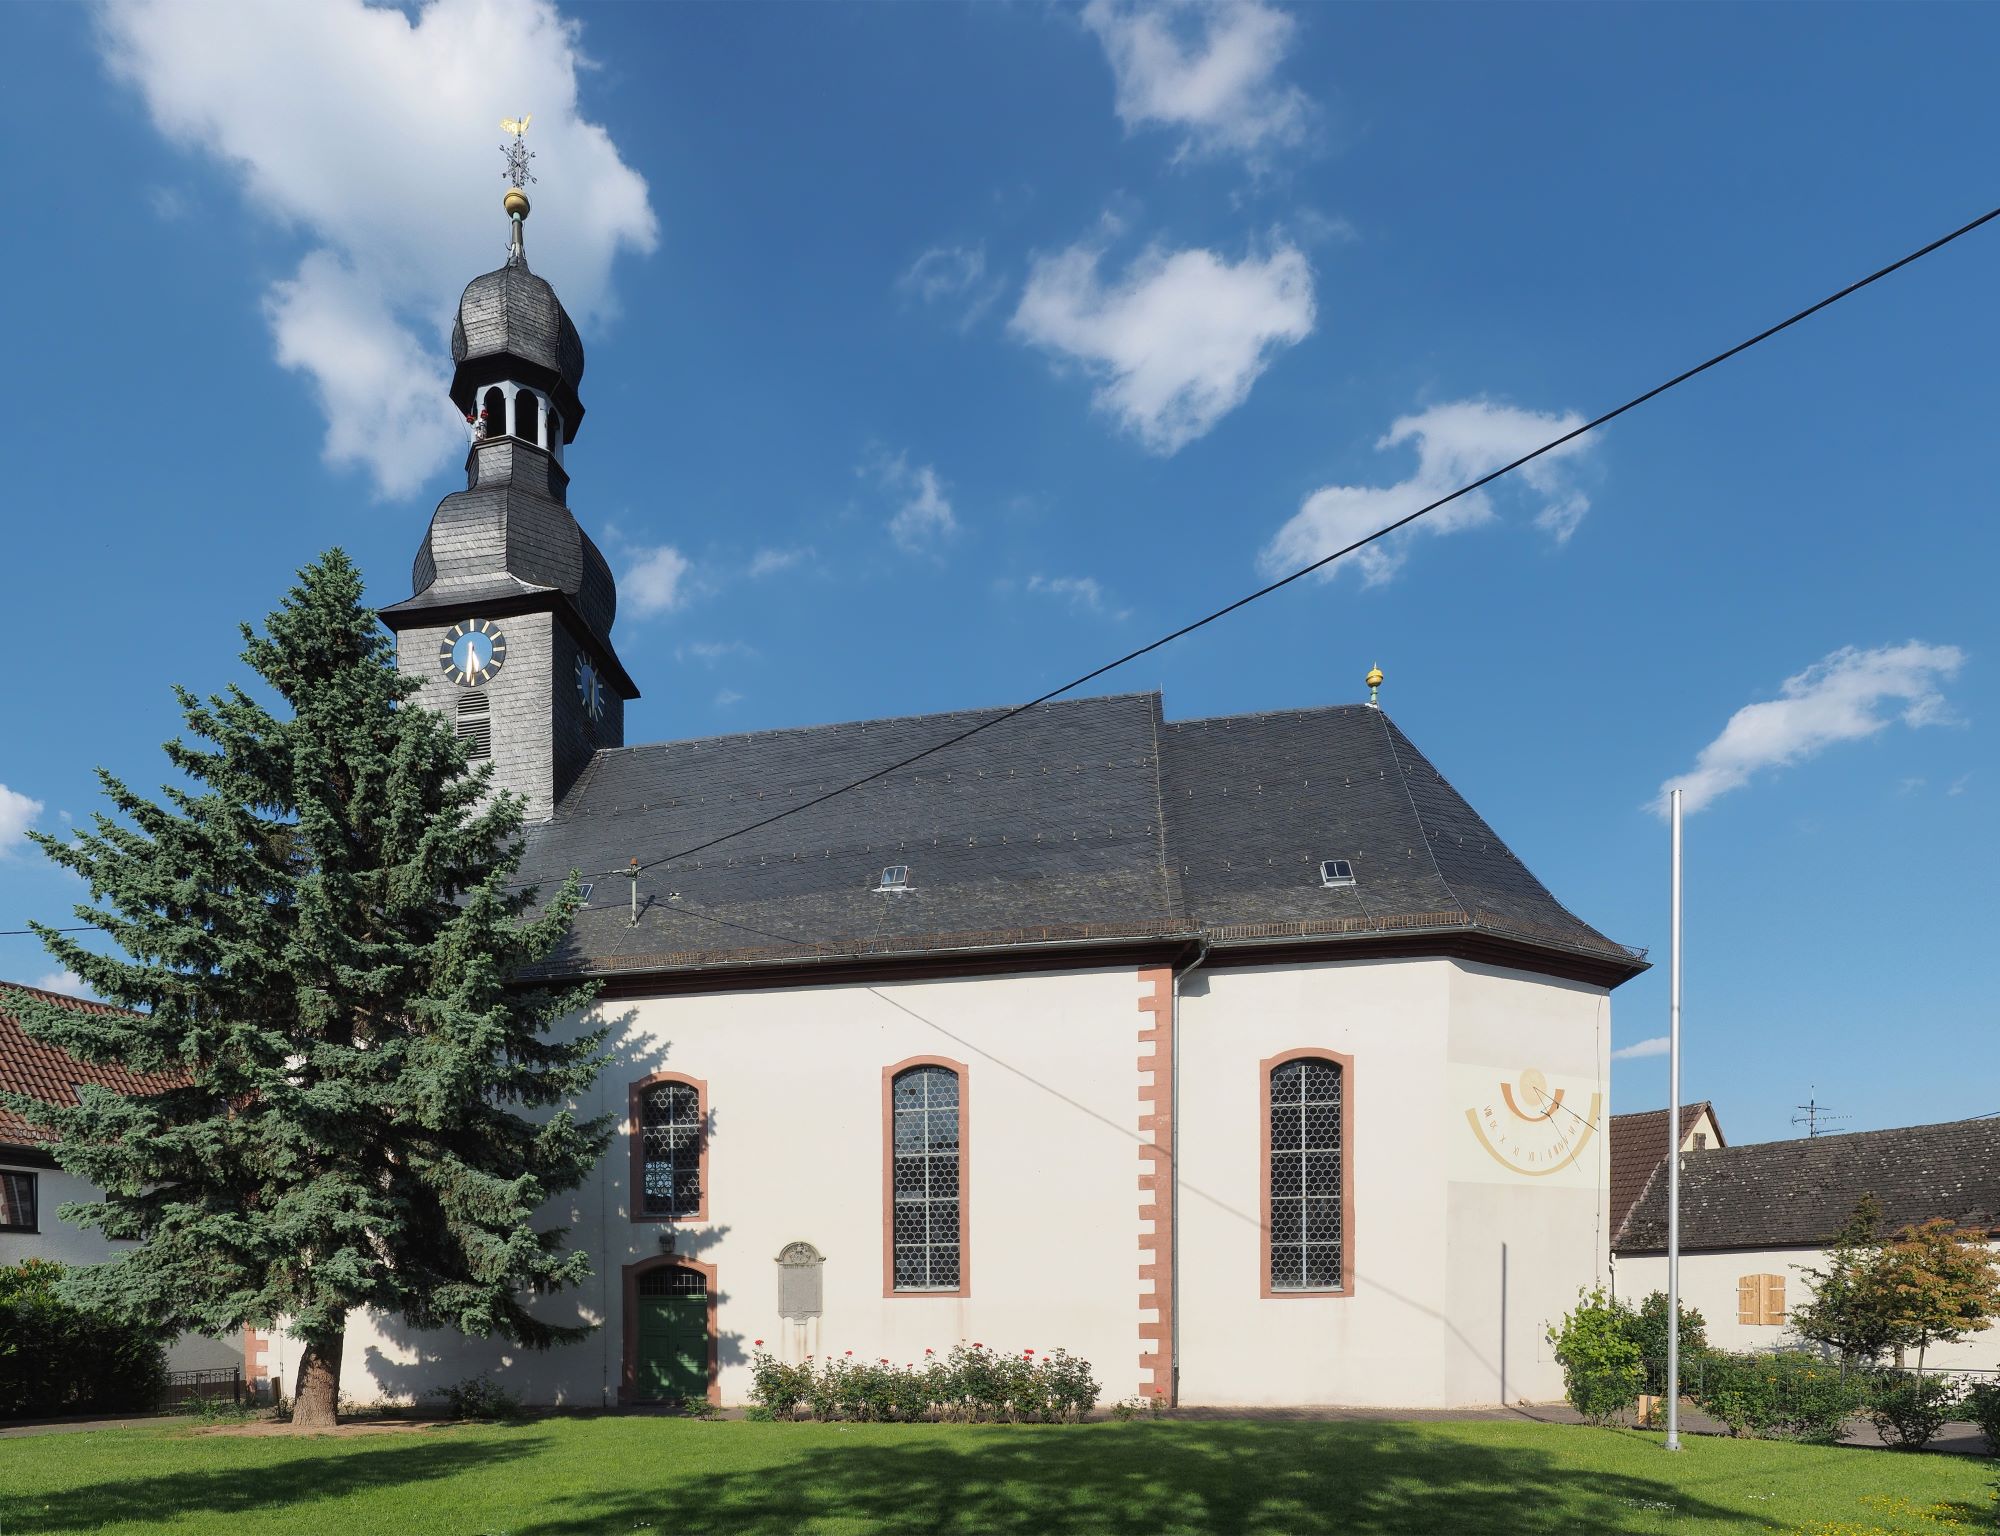 Bild 1 Evangelische Kirche Hofheim-Wallau - Evangelische Kirchengemeinde Hofheim-Wallau in Hofheim